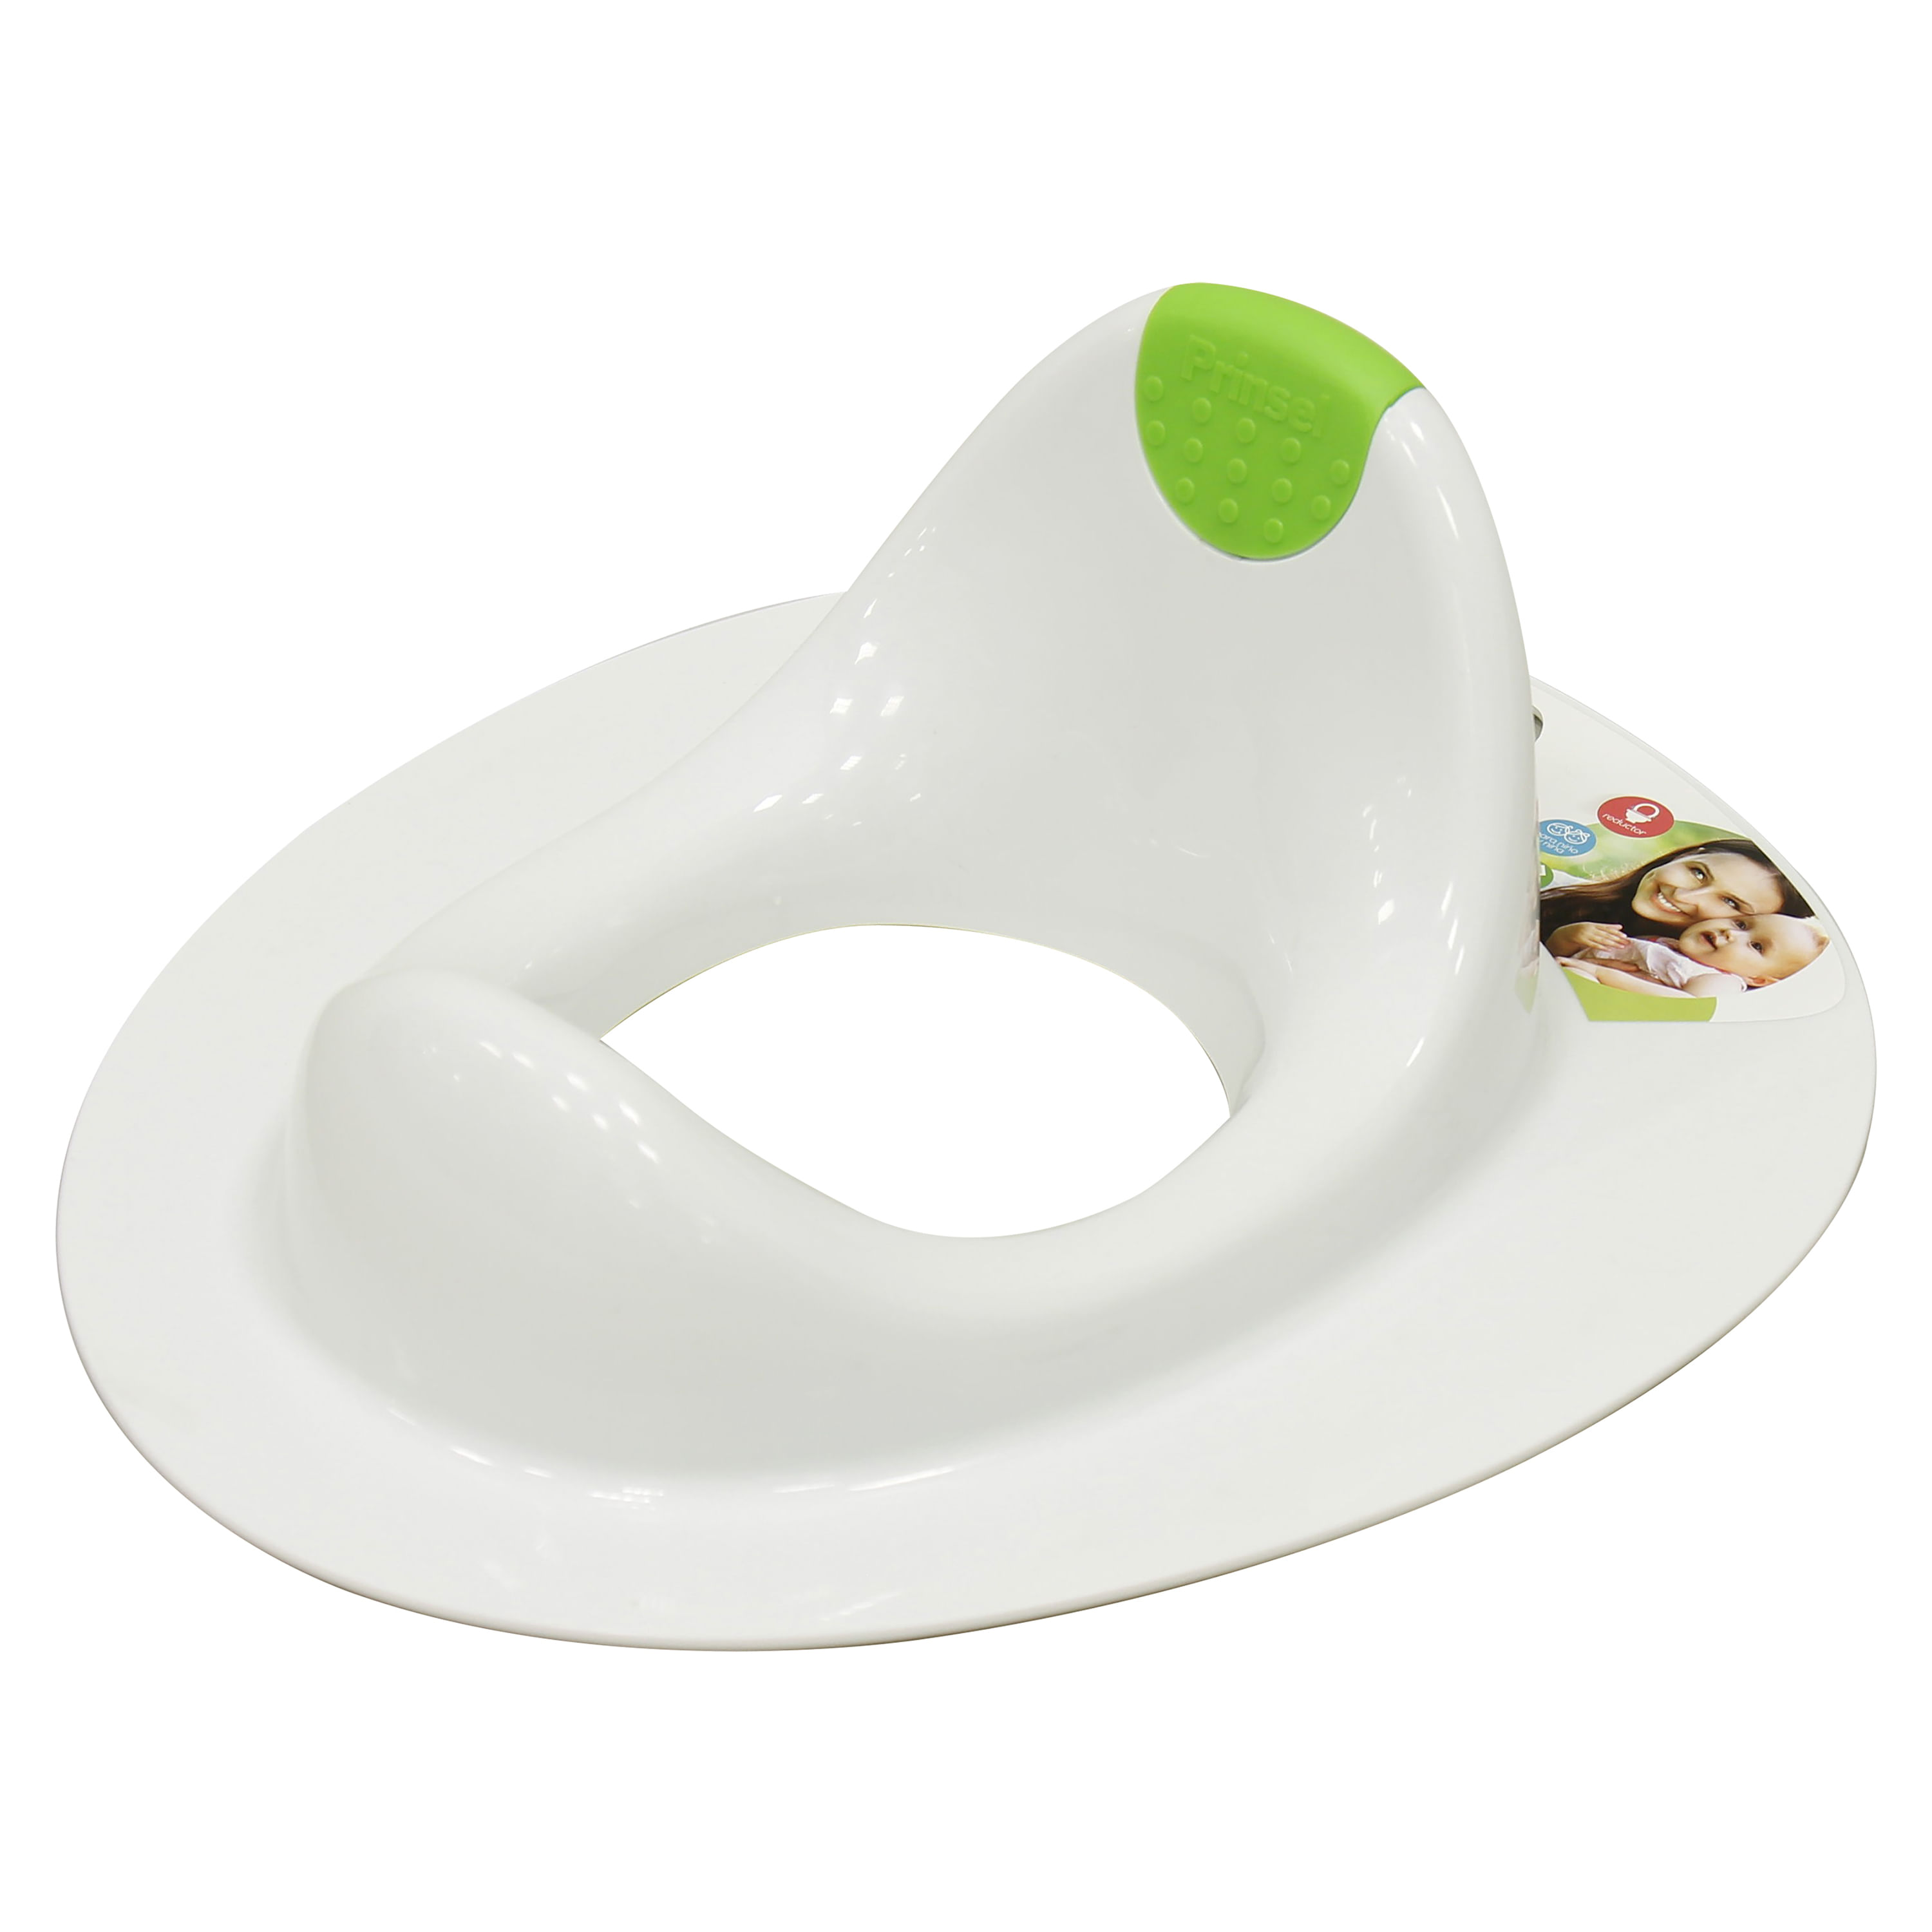 Kids Co. Honduras - Silla de baño para bebé 🛁👶🏼🤩 Incluye soporte de  lujo para la cabeza del bebé. Diseñado en material suave, material  removible para fácil limpieza. Material especial que hace